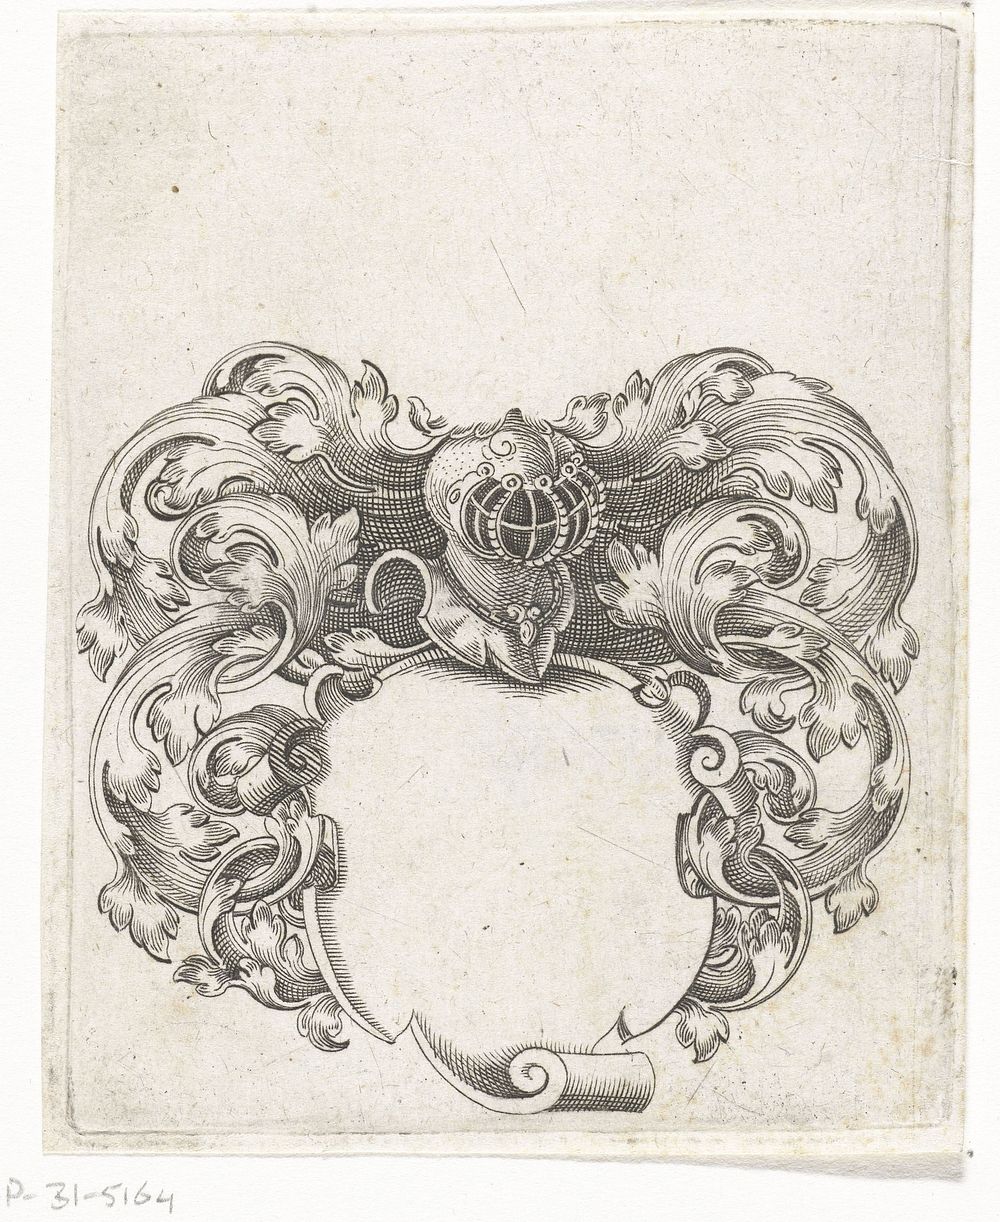 Wapensjabloon met helm en bladranken (1596) by Johann Theodor de Bry, anonymous and Johann Theodor en Johann Israel de Bry